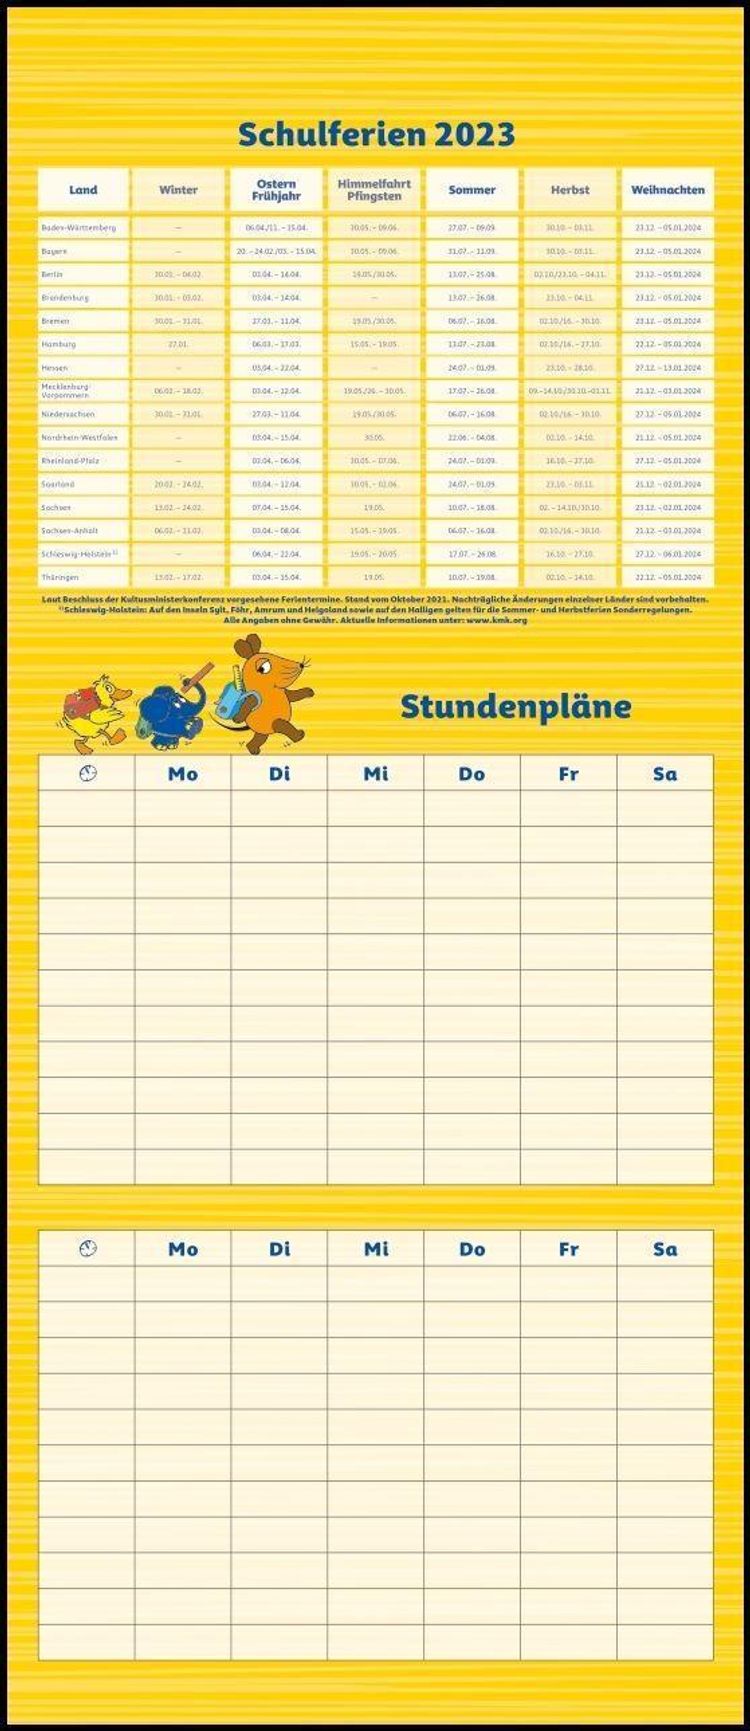 Die Maus 2023 - DUMONT Mega-Familienkalender mit 6 Spalten - Familienplaner  mit 2 Stundenplänen und Ferientabelle - Hoch - Kalender bestellen